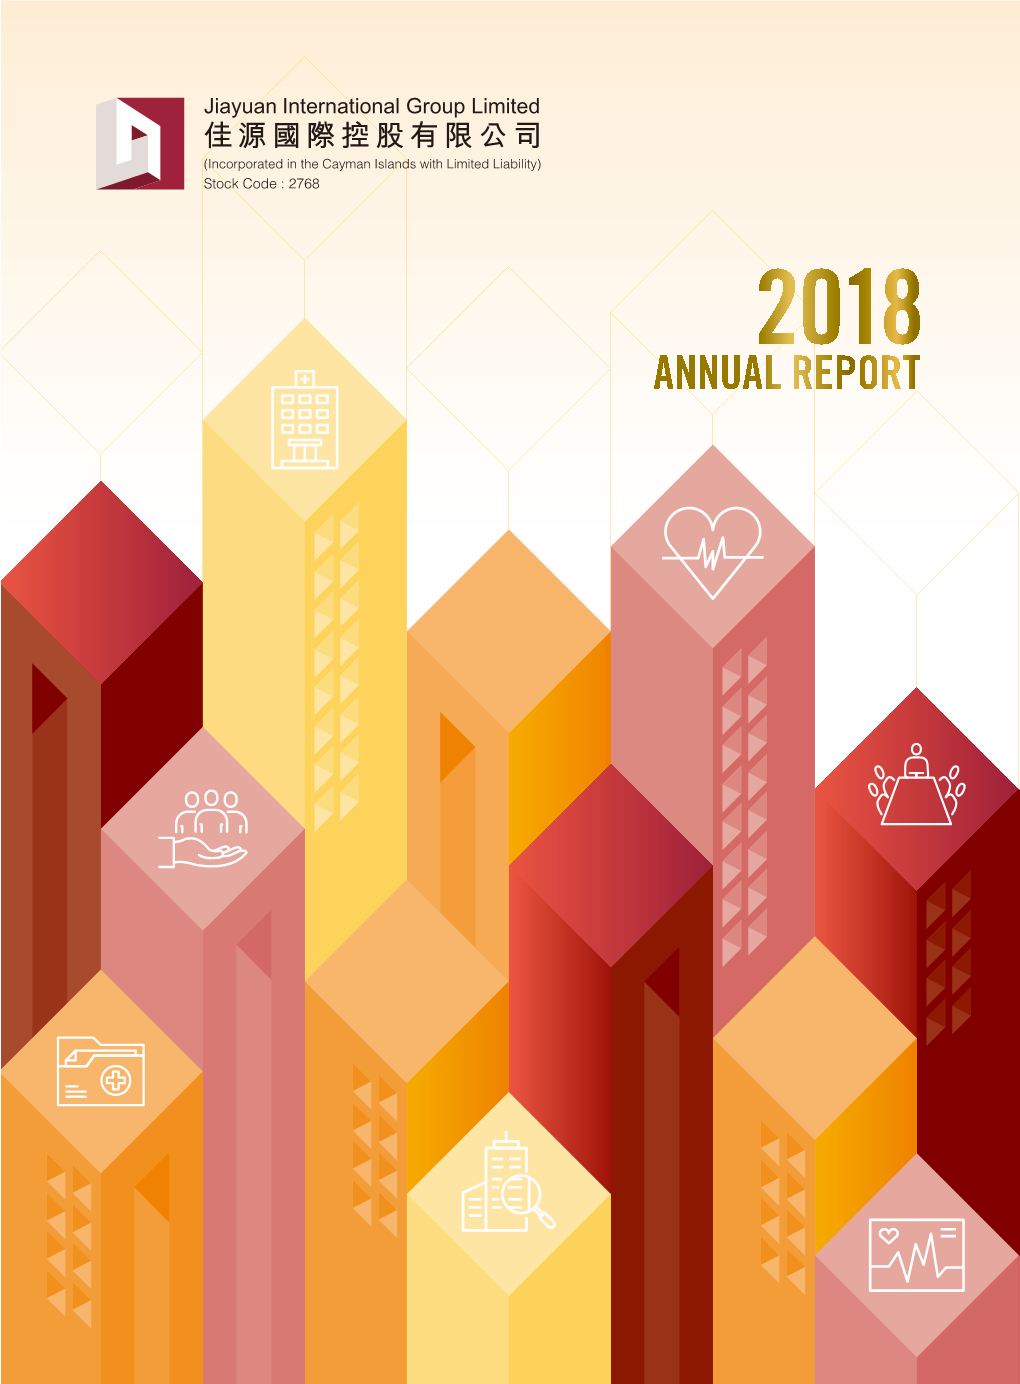 Annual Report 2018 COMPANY PROFILE